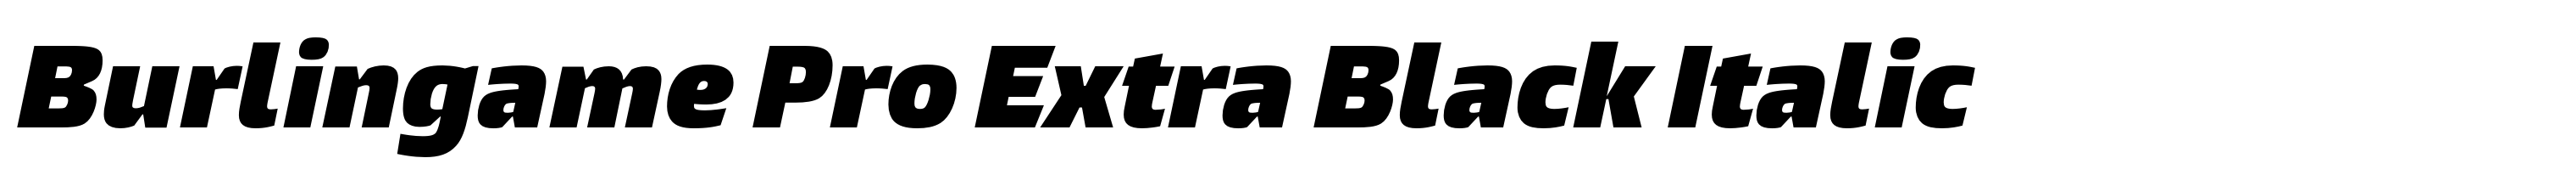 Burlingame Pro Extra Black Italic